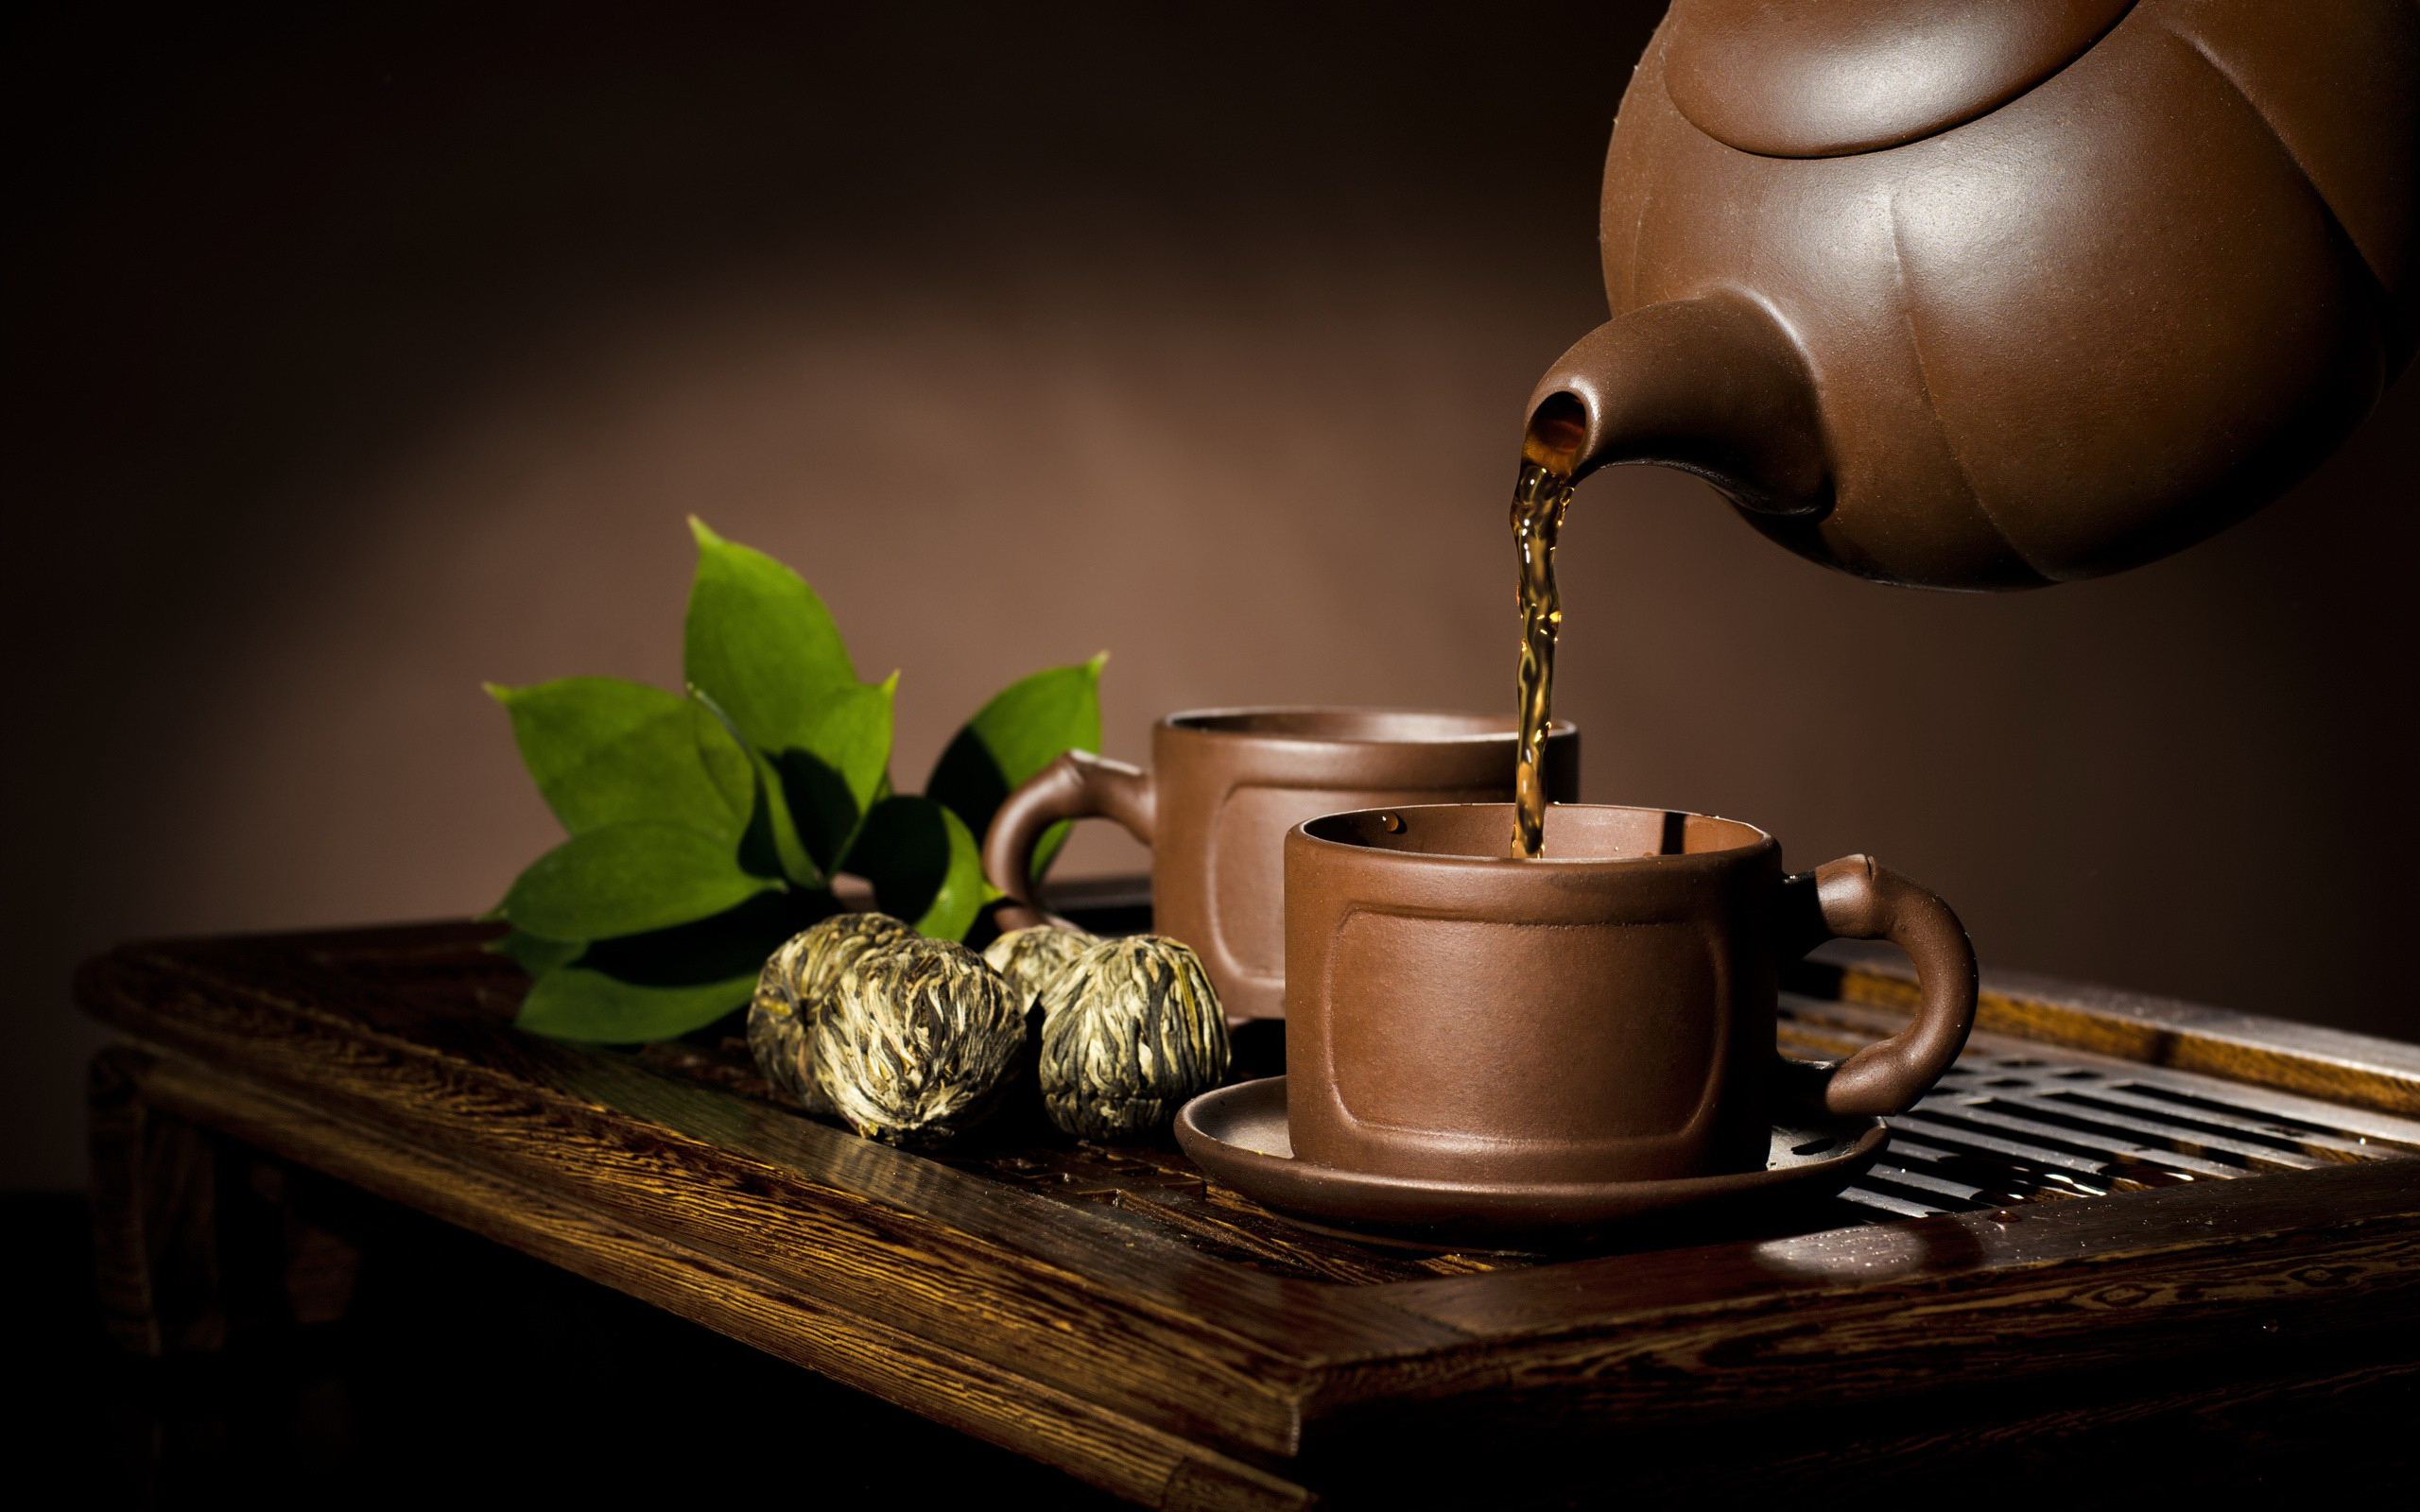 بک گراند خوشمنظر از فنجان و قوری چوبی درحال سرو چای